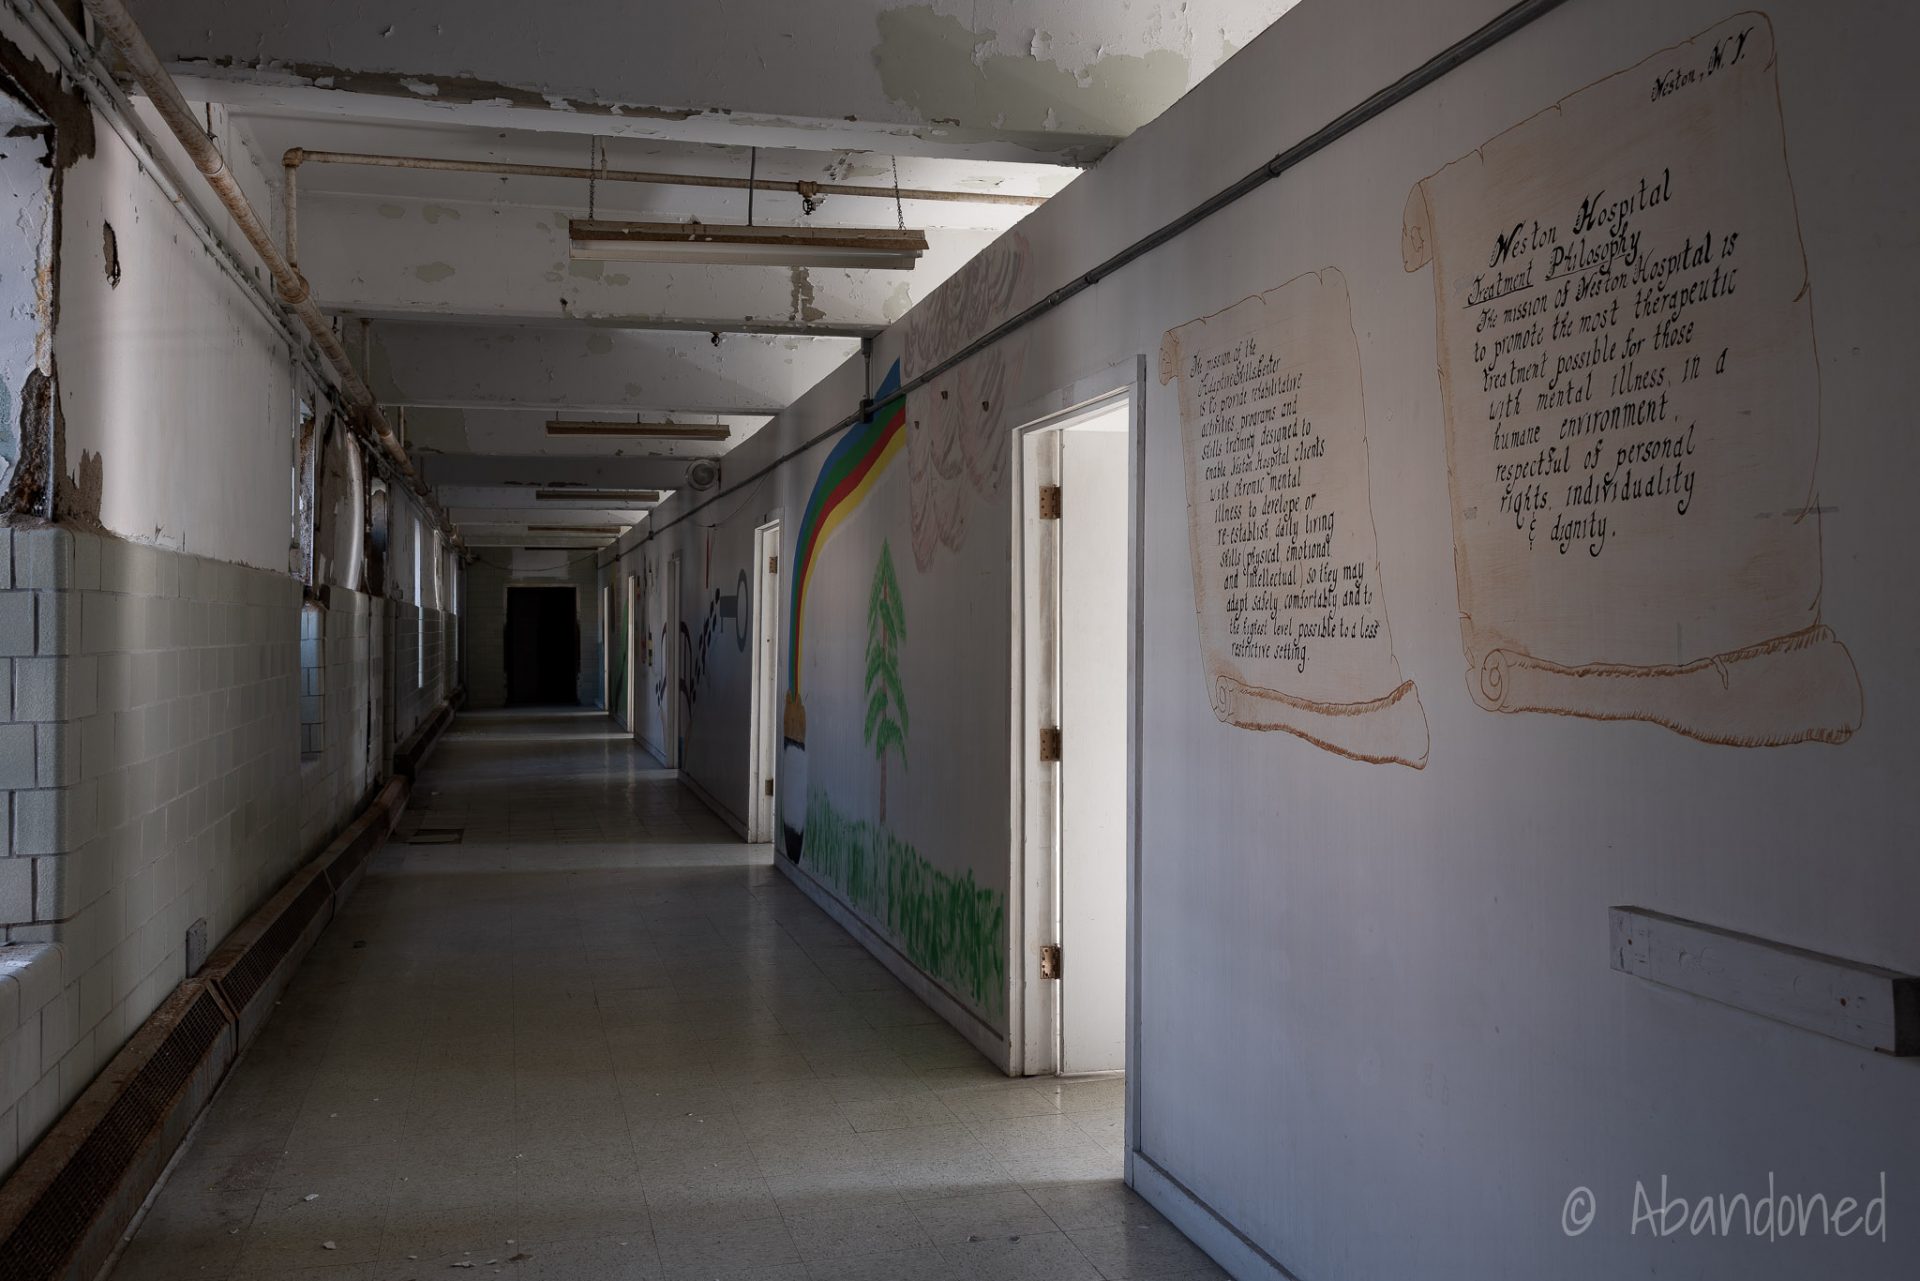 Trans-Allegheny Lunatic Asylum Ward Hallway with Mural